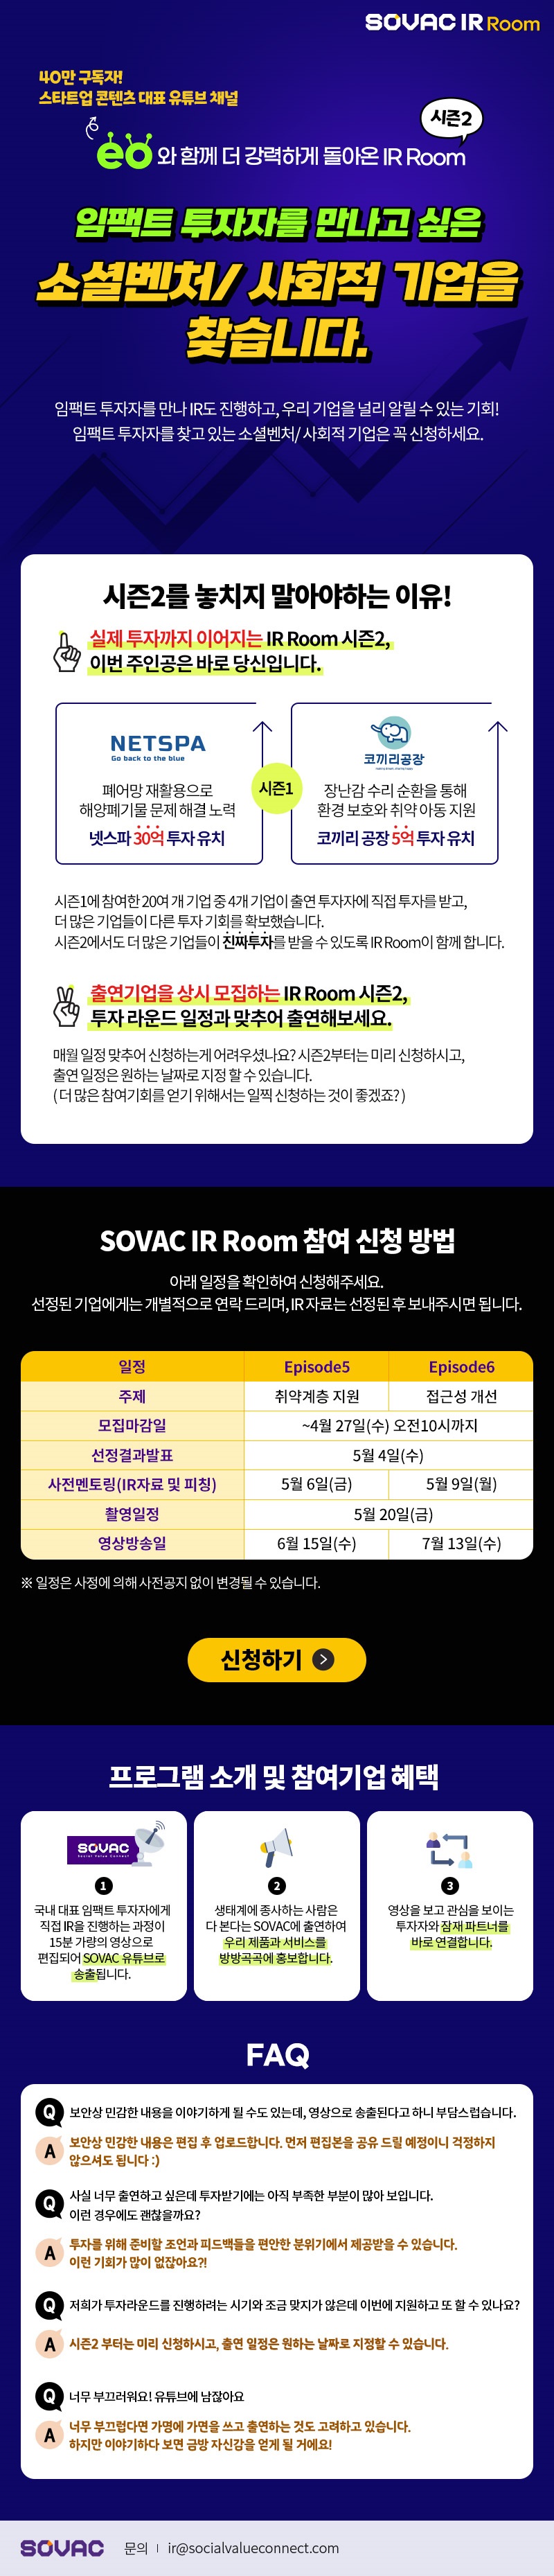 SOVAC IR Room 시즌2 참여기업 모집